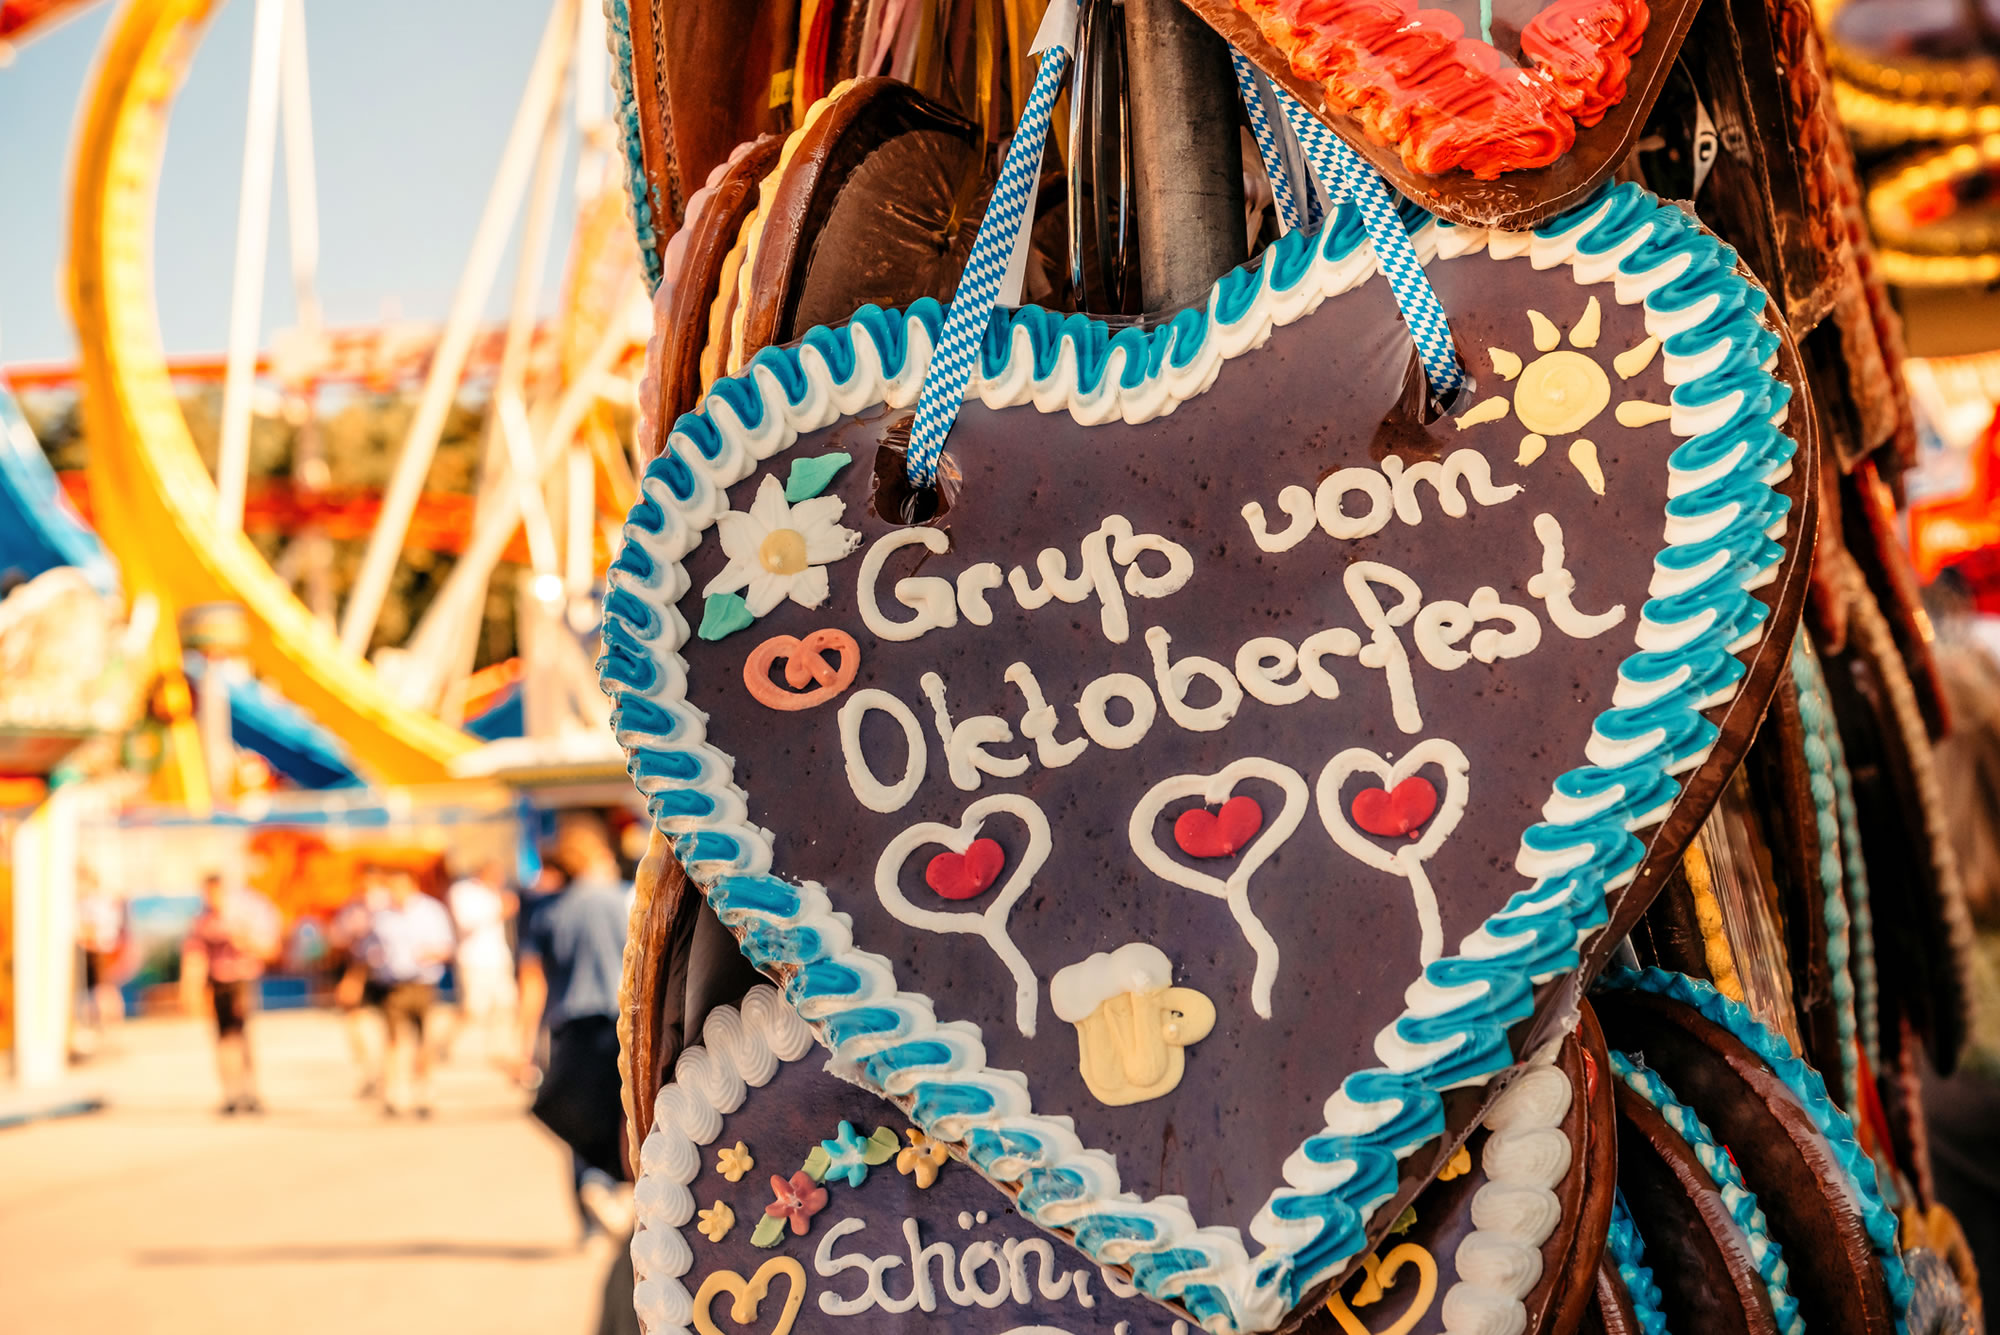 See the Oktoberfest in Munich